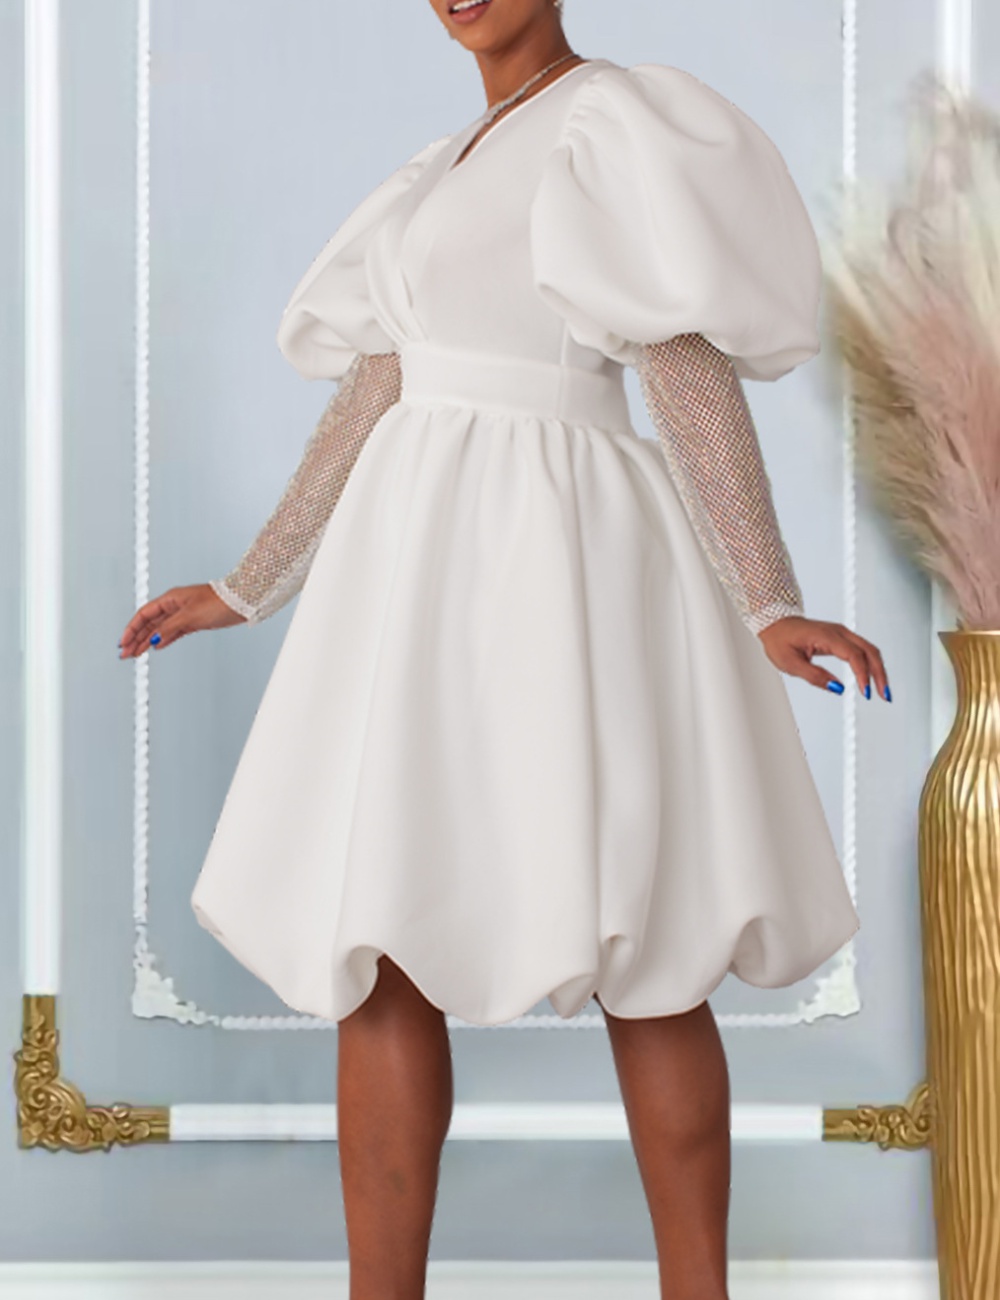 European style big skirt dress V-neck formal dress for women